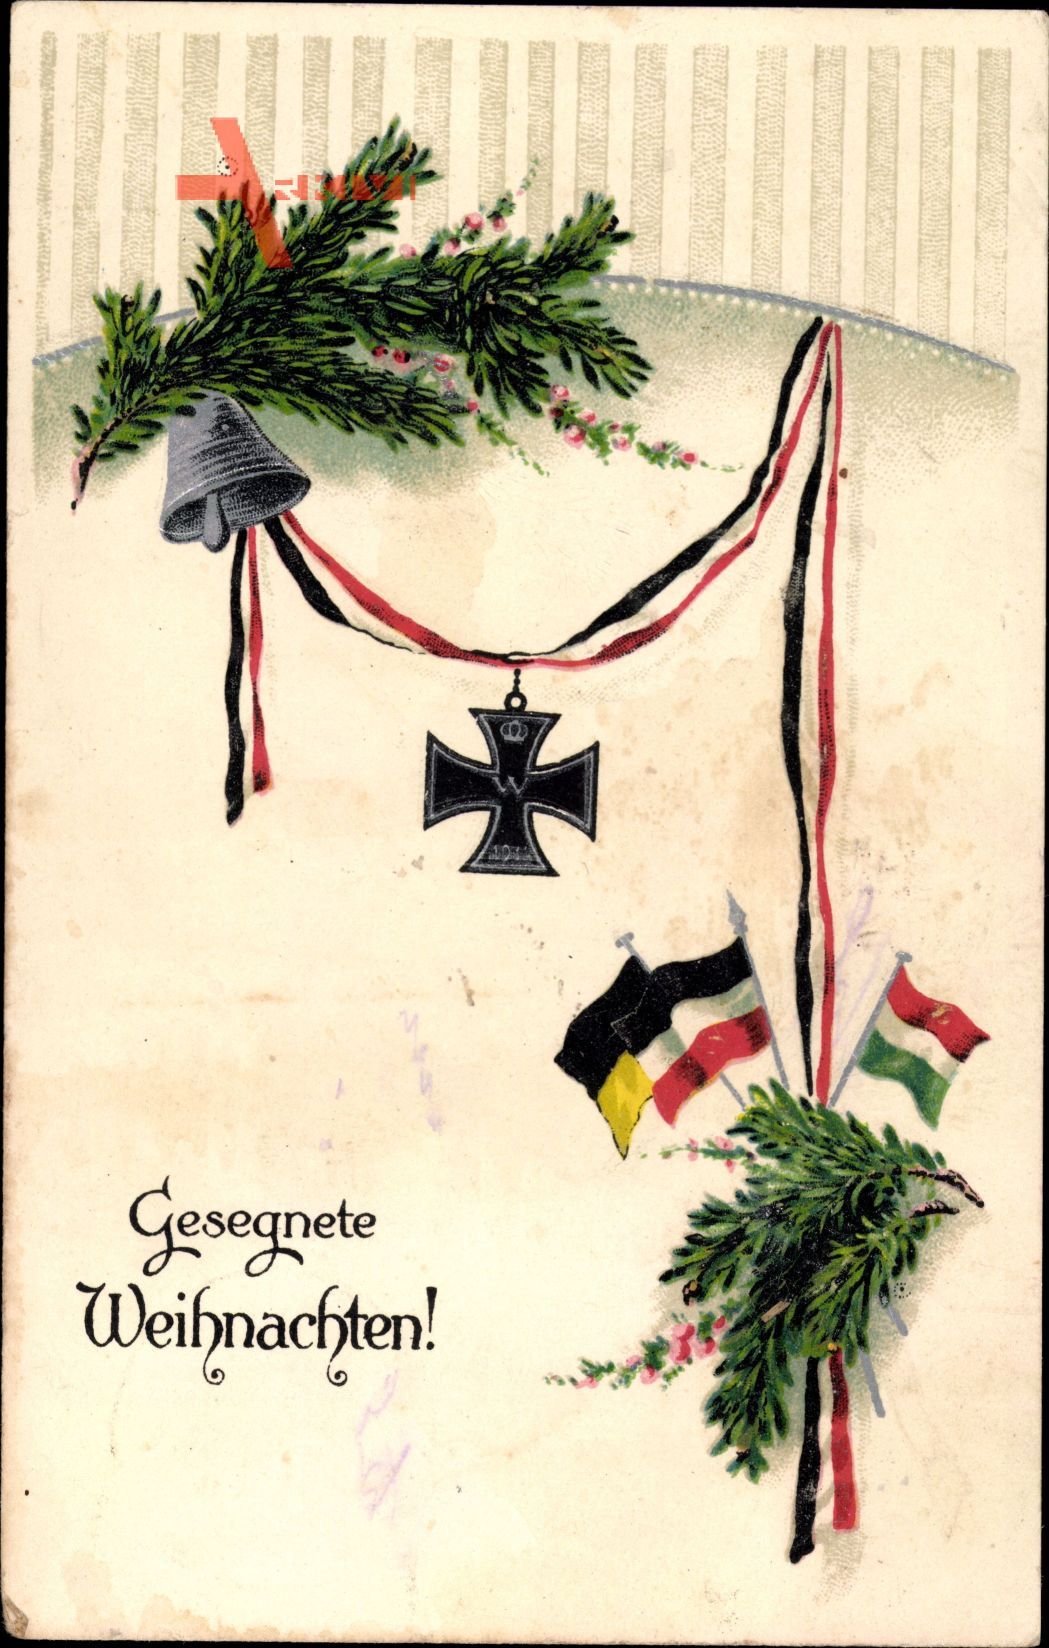 Glückwunsch Weihnachten, Glocke, eisernes Kreuz, Tannenzweige, Fahnen